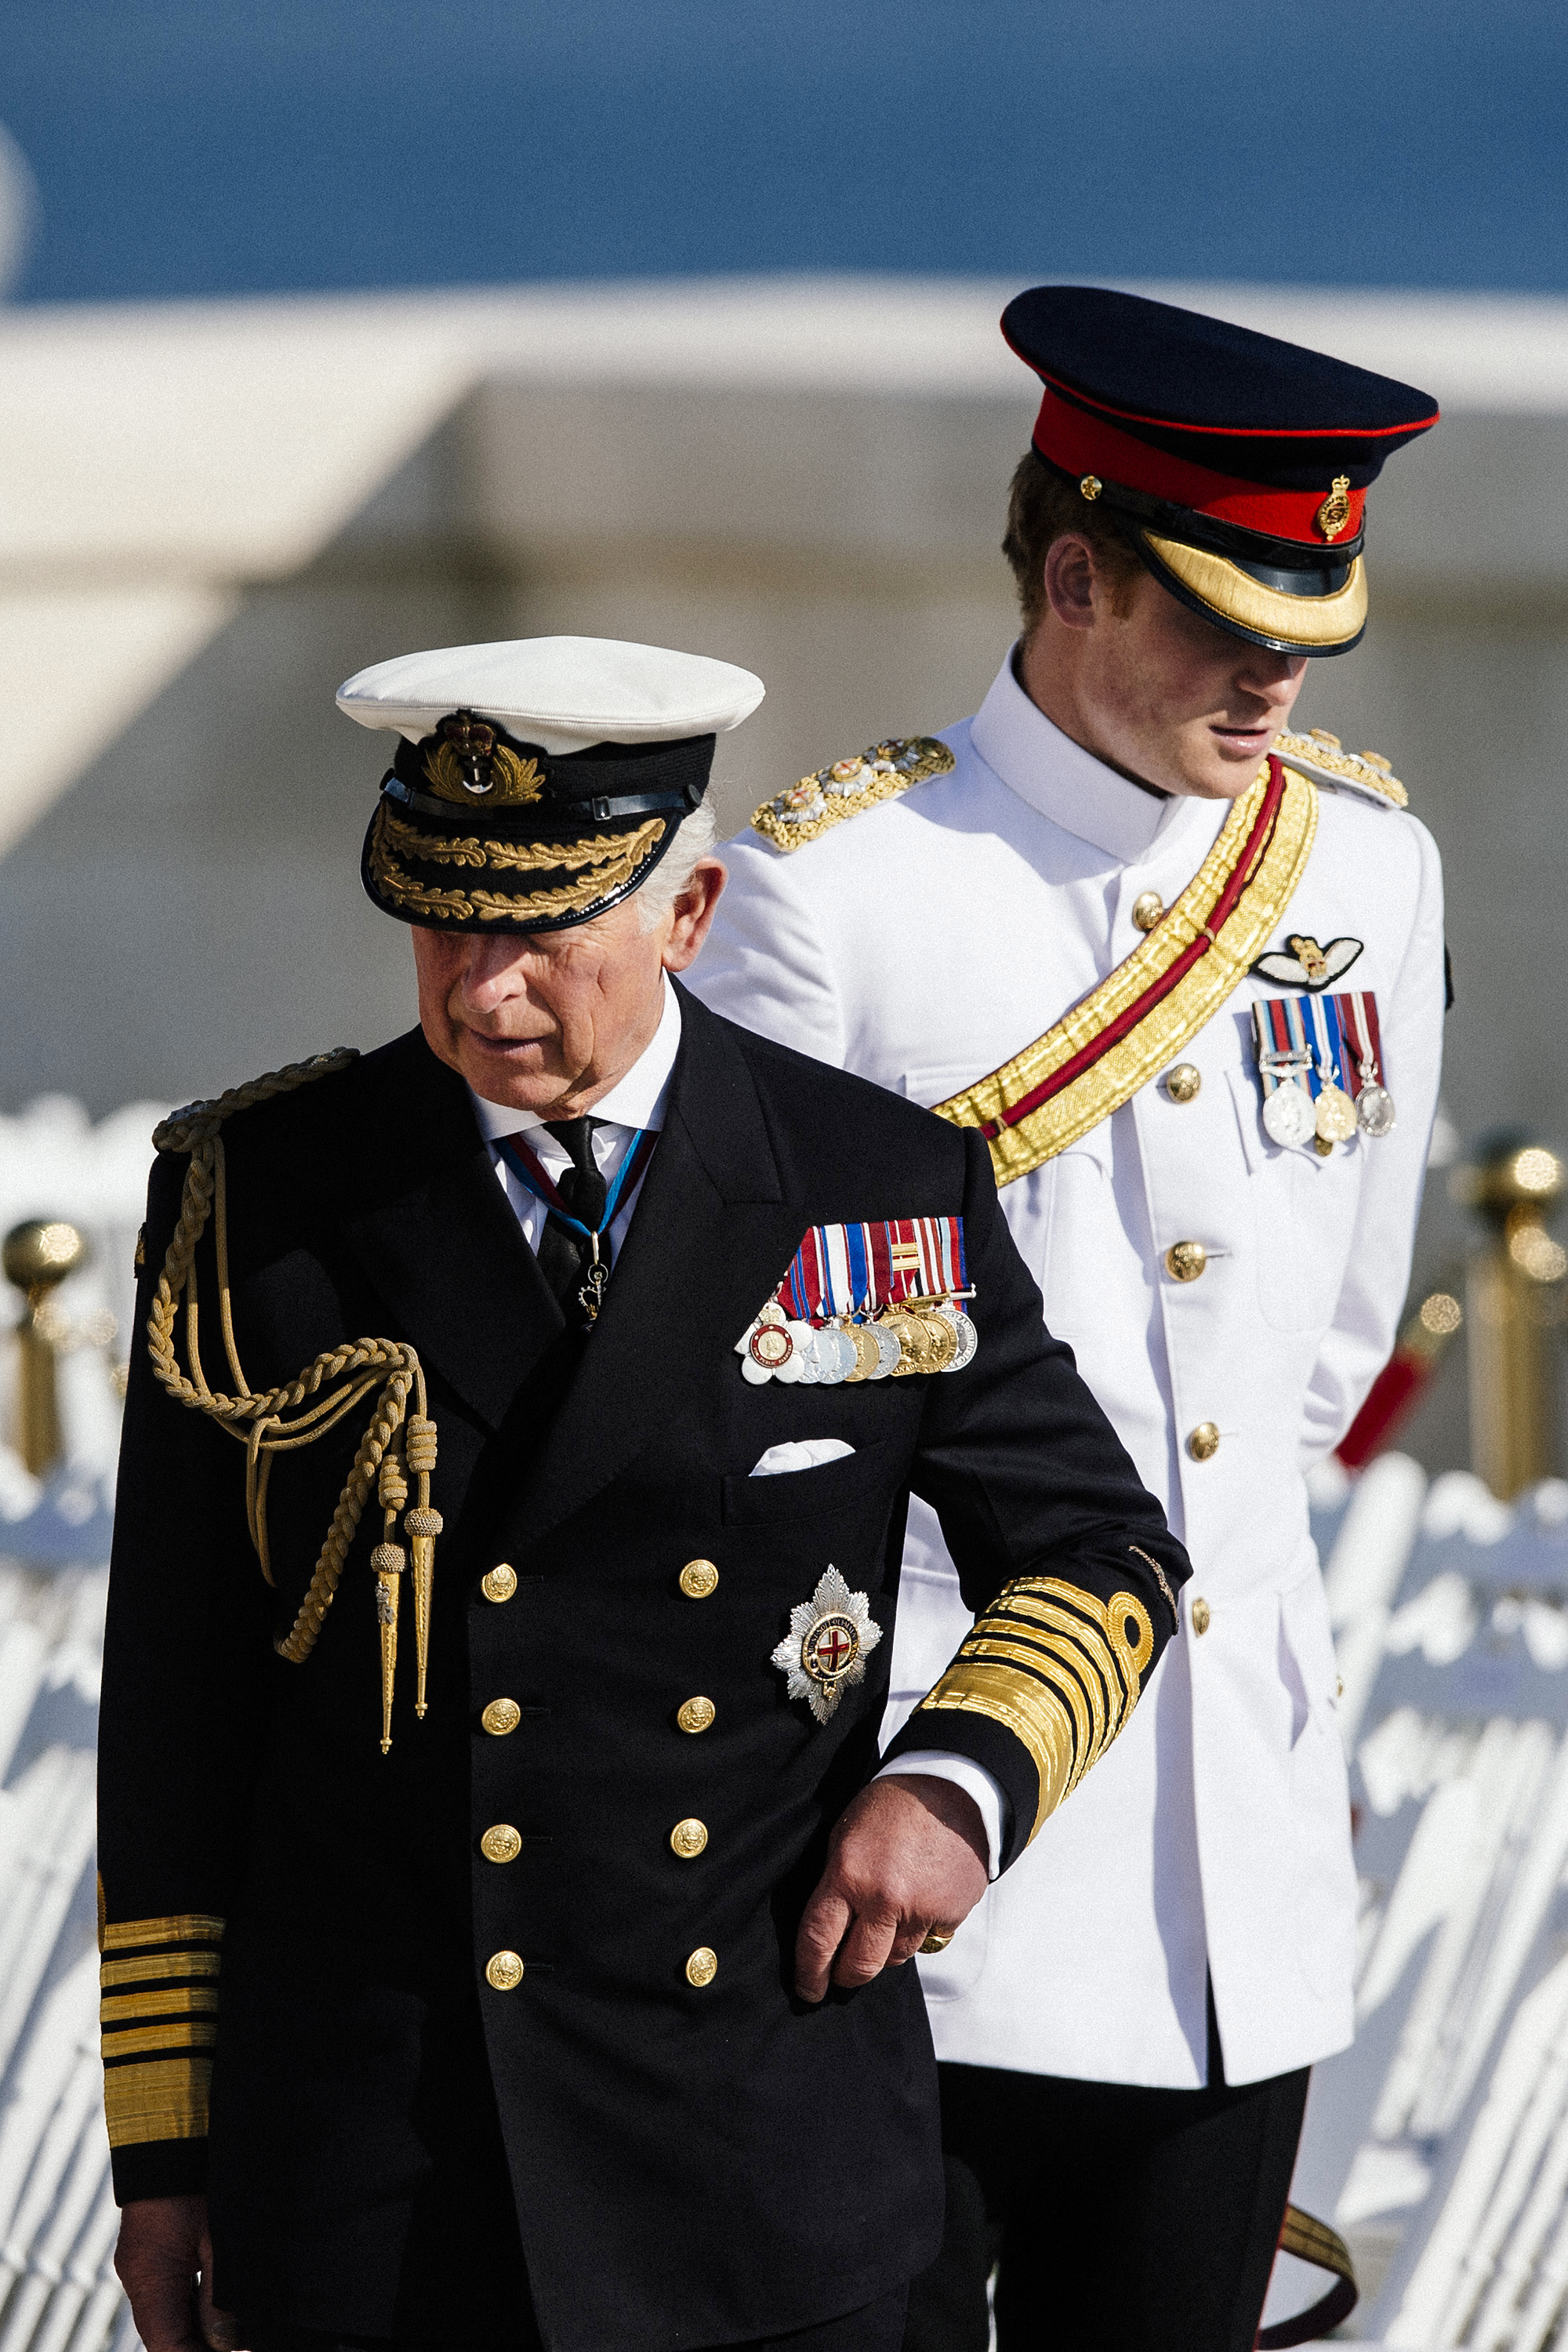 El rey Charles III y el príncipe Harry asisten a un servicio conmemorativo del centenario del inicio de la Batalla de Galípoli en la península de Galípoli, Turquía, el 24 de abril de 2015 | Fuente: Getty Images